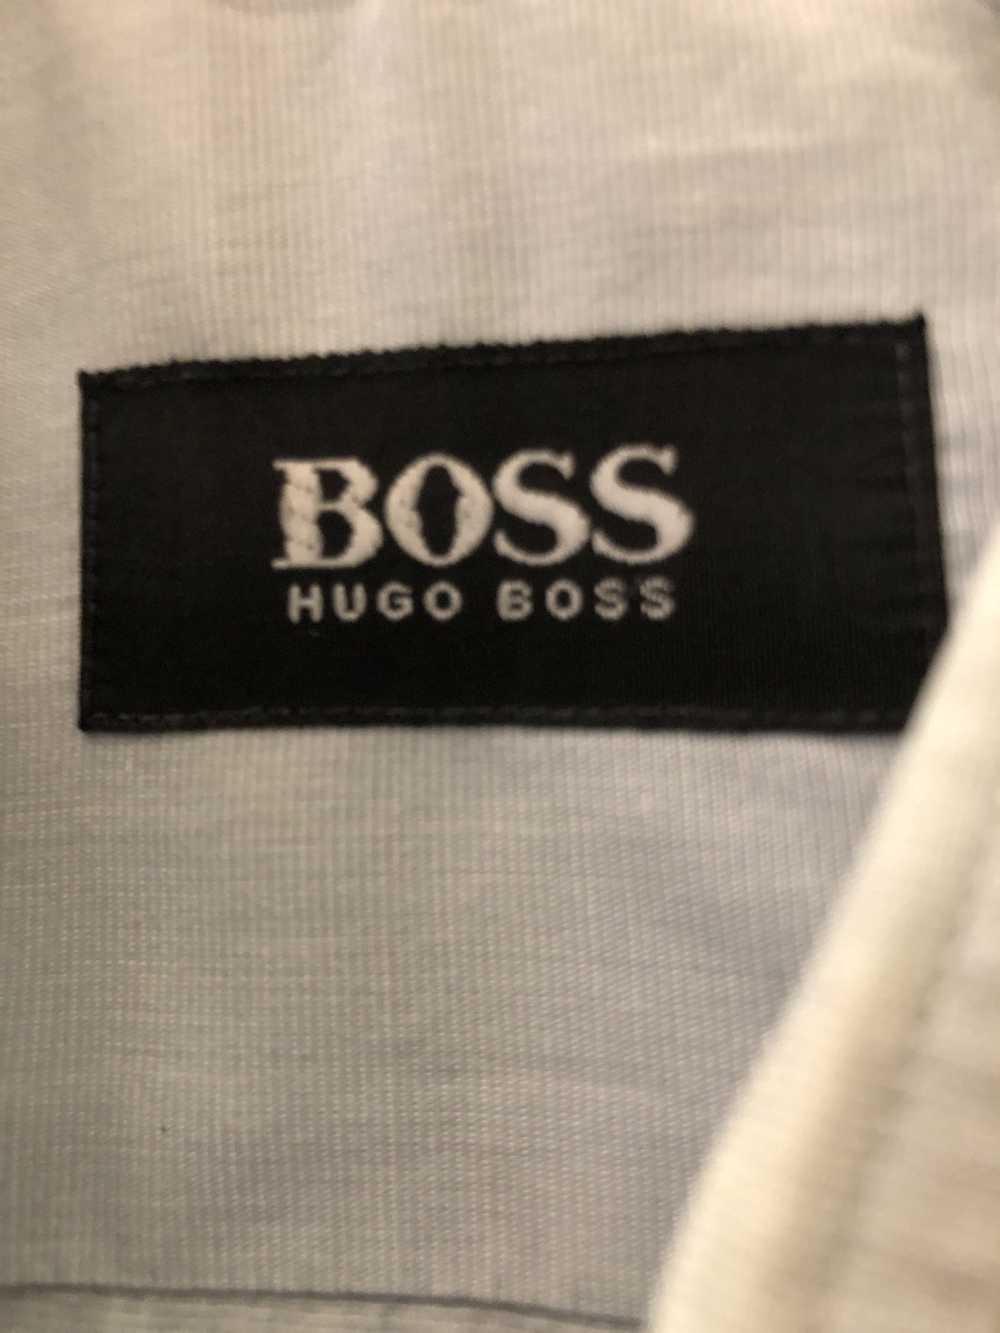 Hugo Boss Hugo Boss Dress Shirt - image 1